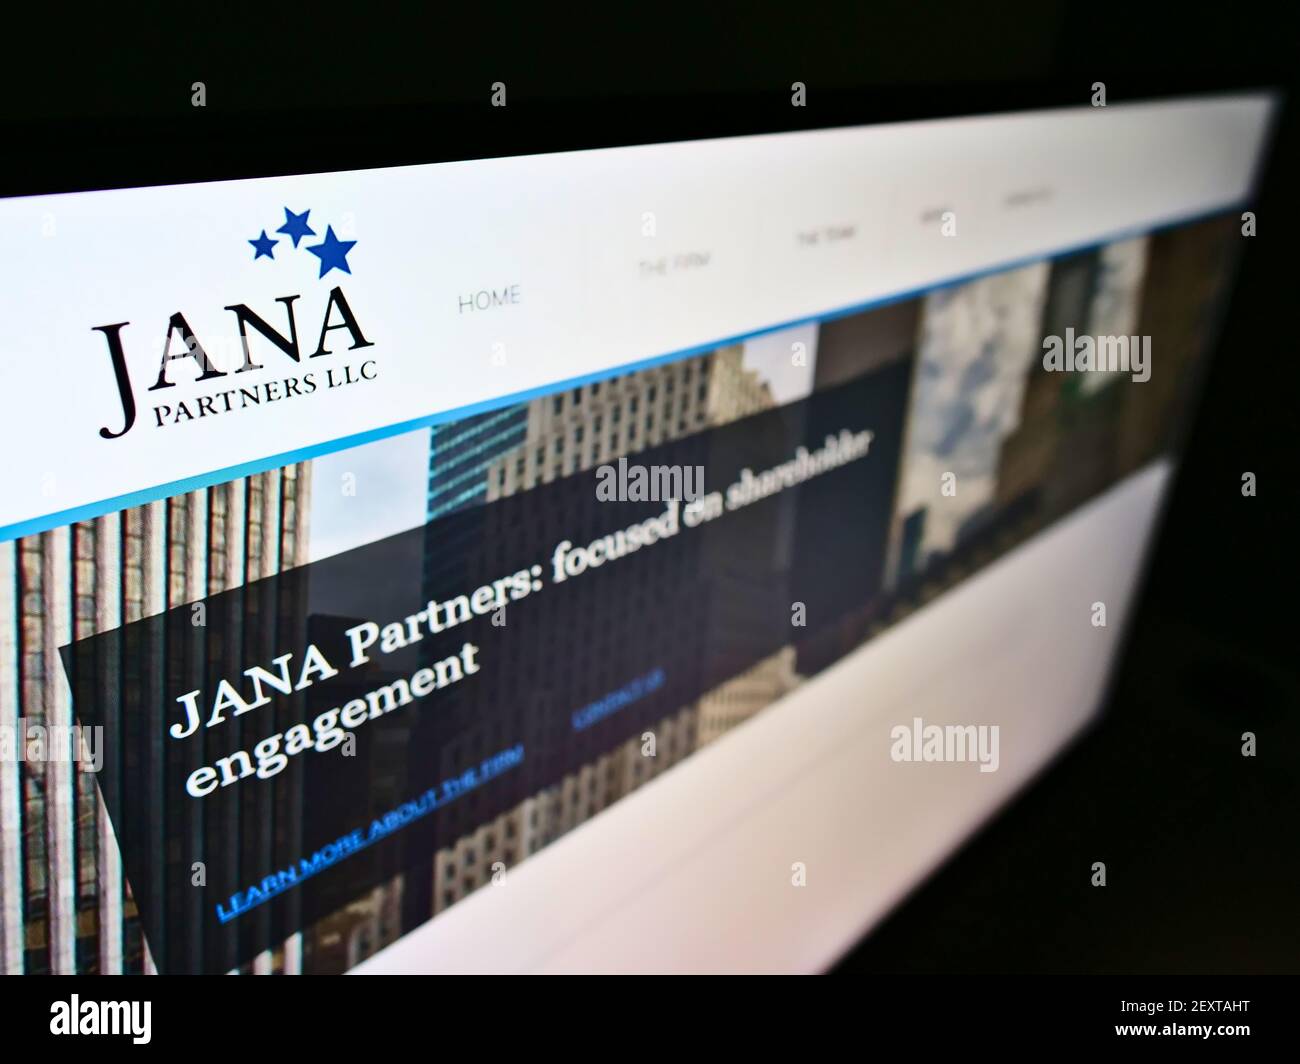 Vista ad alto angolo del sito web aziendale con il logo della società di investimento statunitense JANA Partners LLC su monitor. Mettere a fuoco sulla parte superiore sinistra dello schermo del computer. Foto Stock